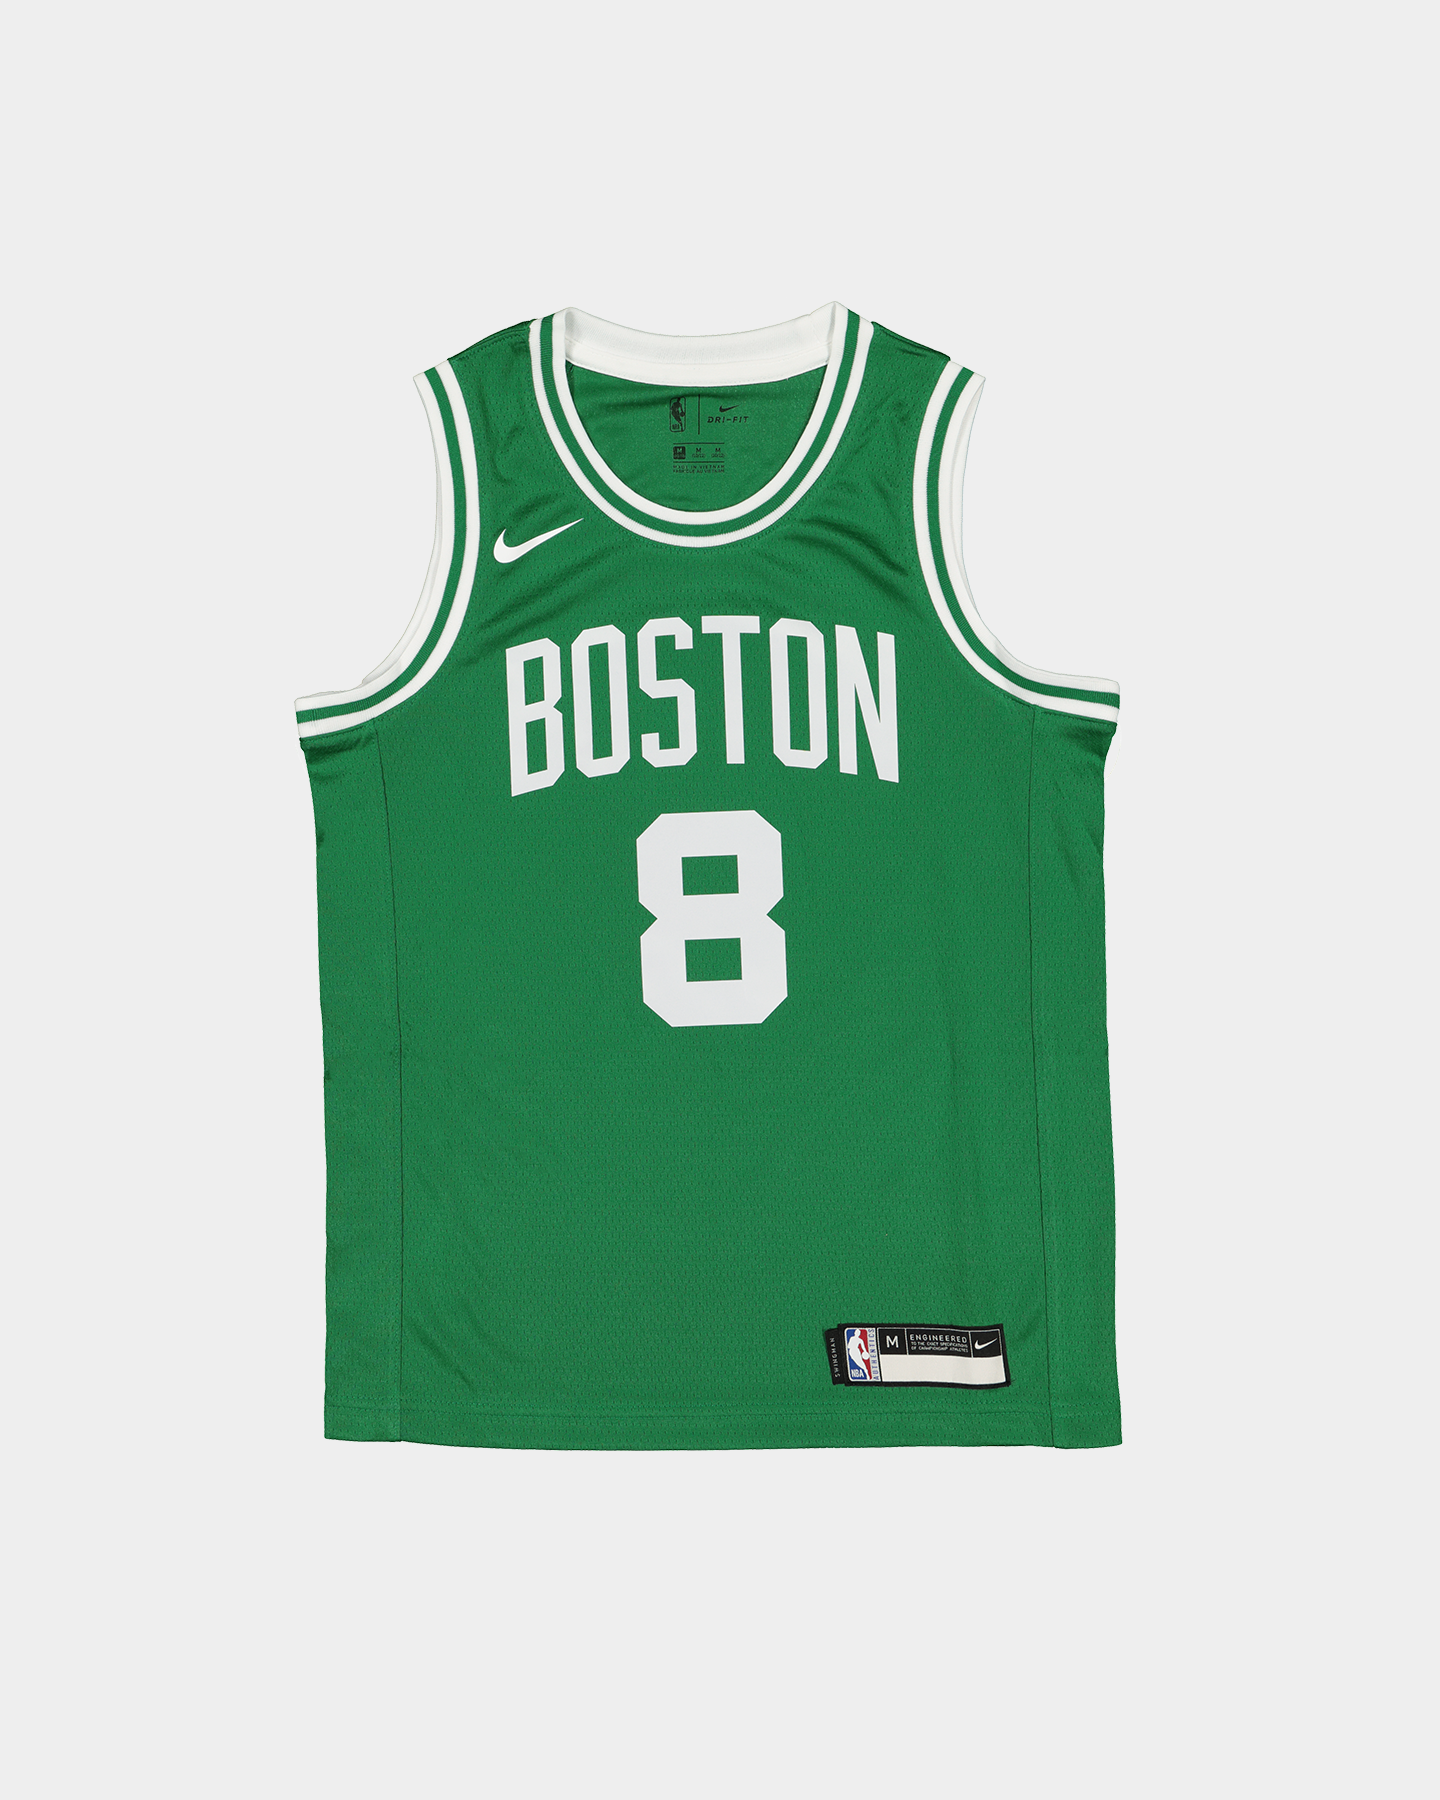 Boston Celtics - Culture Kings